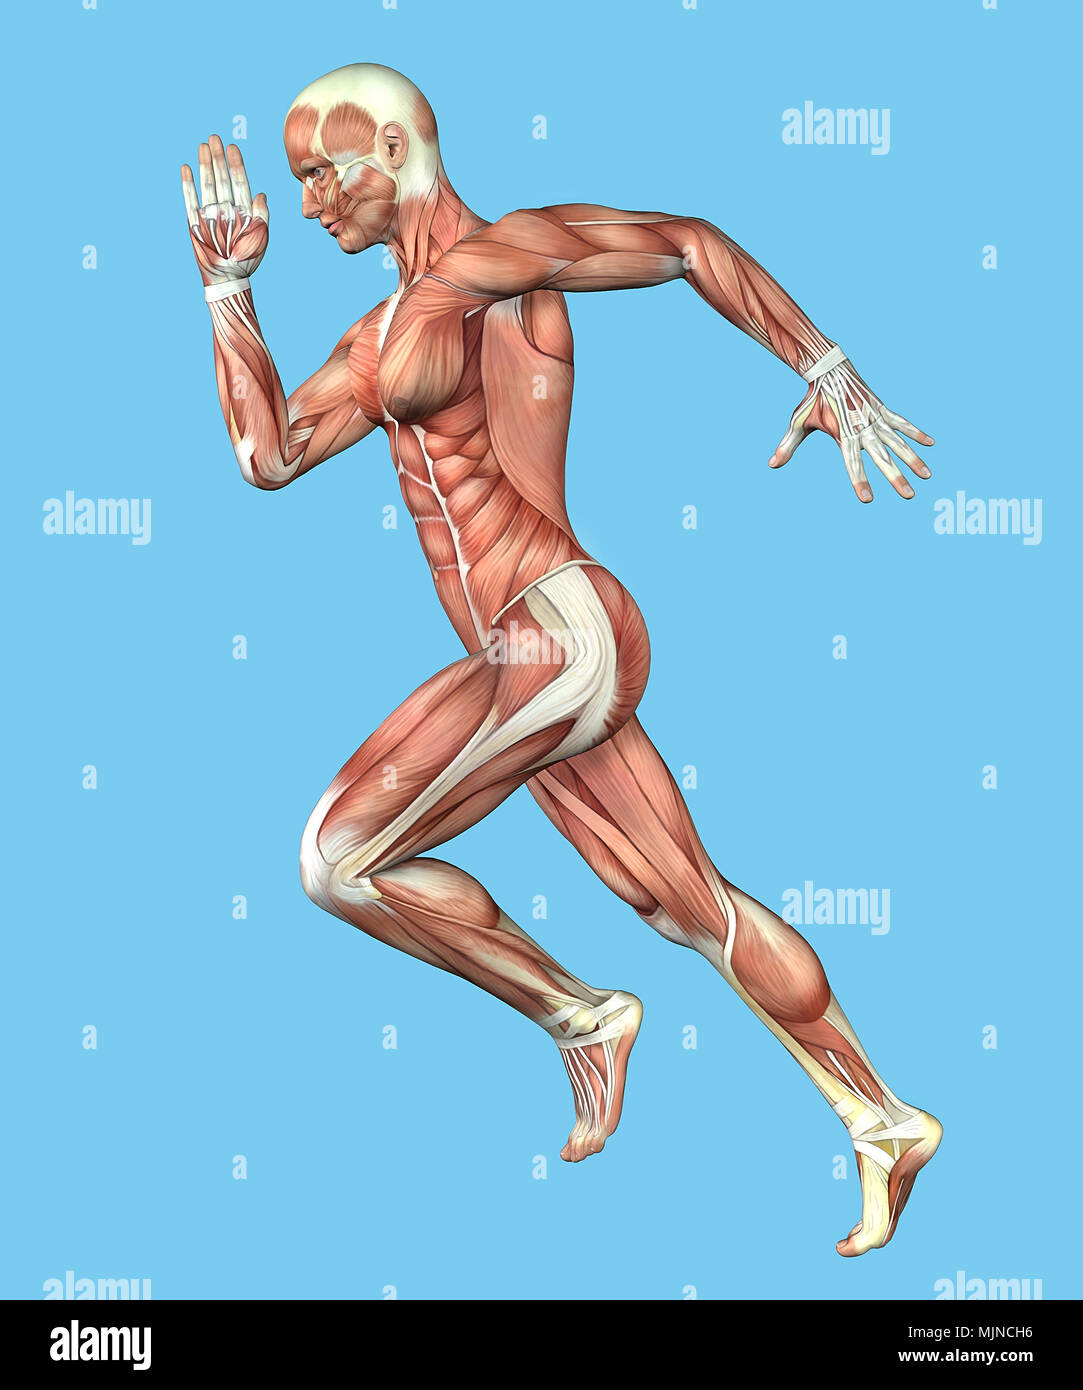 Anatomie du muscle de l'homme dans l'exécution de requête Banque D'Images